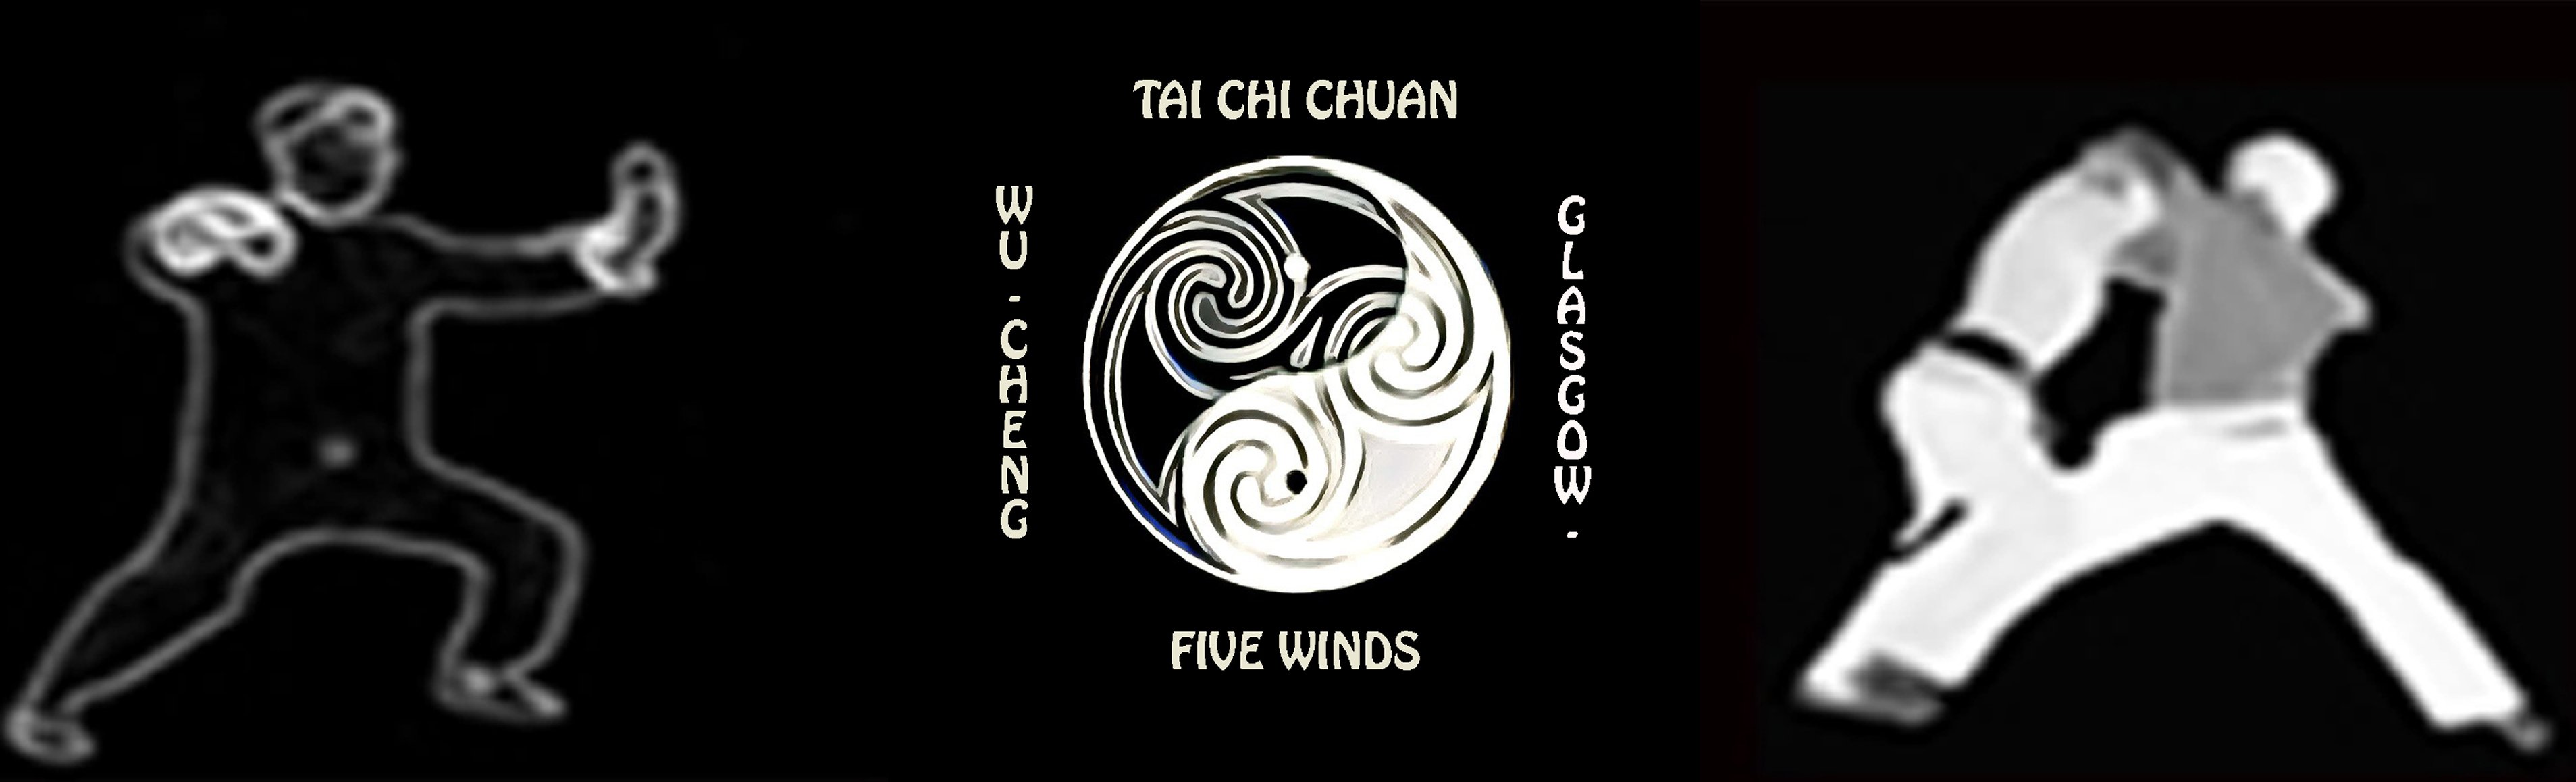 Five Winds Tai Chi Chuan (Glasgow) logo